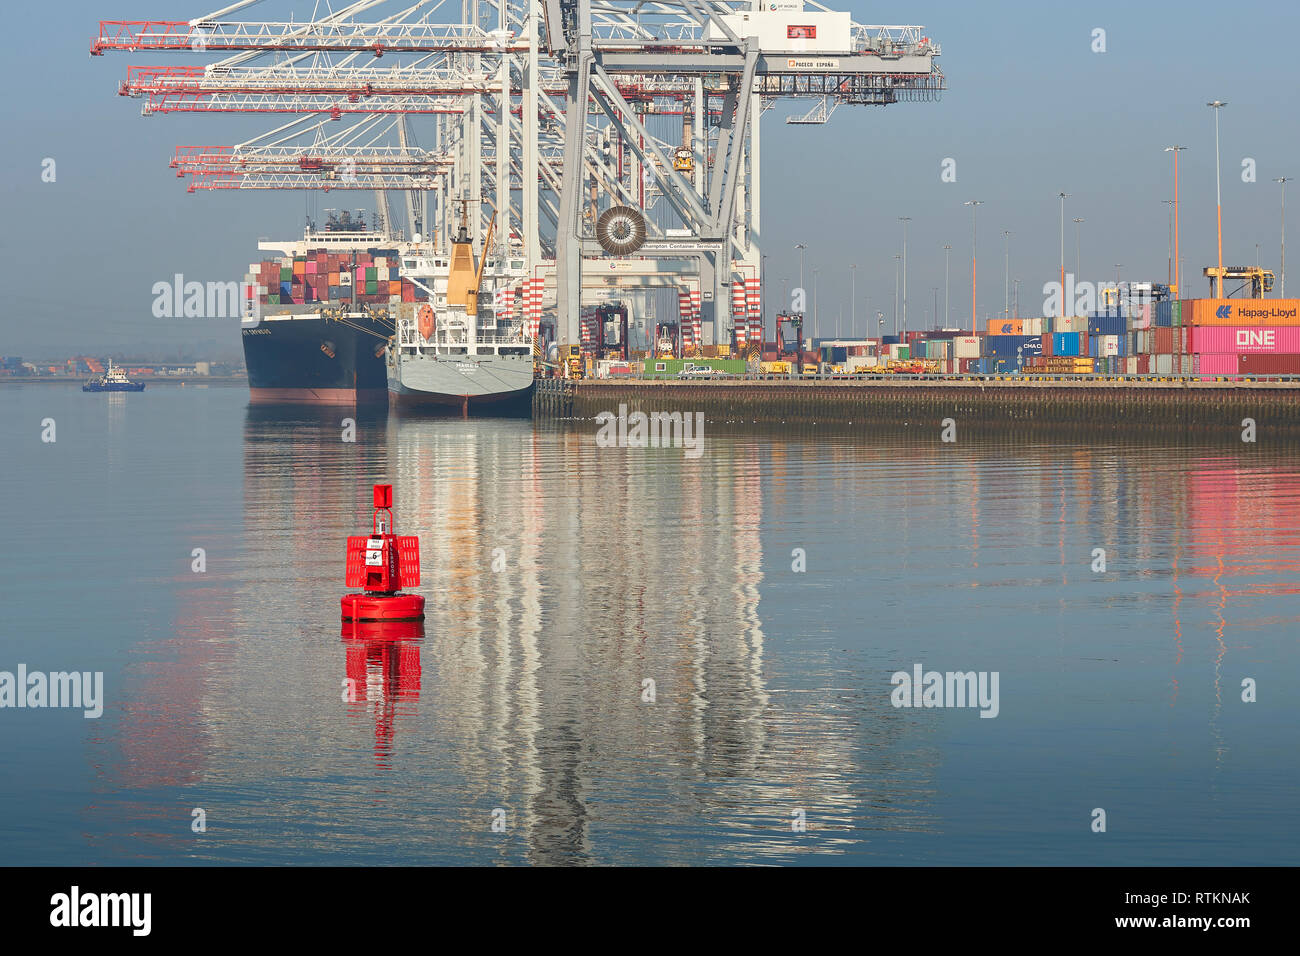 Riflessioni in acqua come il piccolo contenitore Nave, MAIKE D, anteriore e il contenitore più grande nave, NRK ORFEO, dietro, vengono caricate e scaricate. Regno Unito. Foto Stock